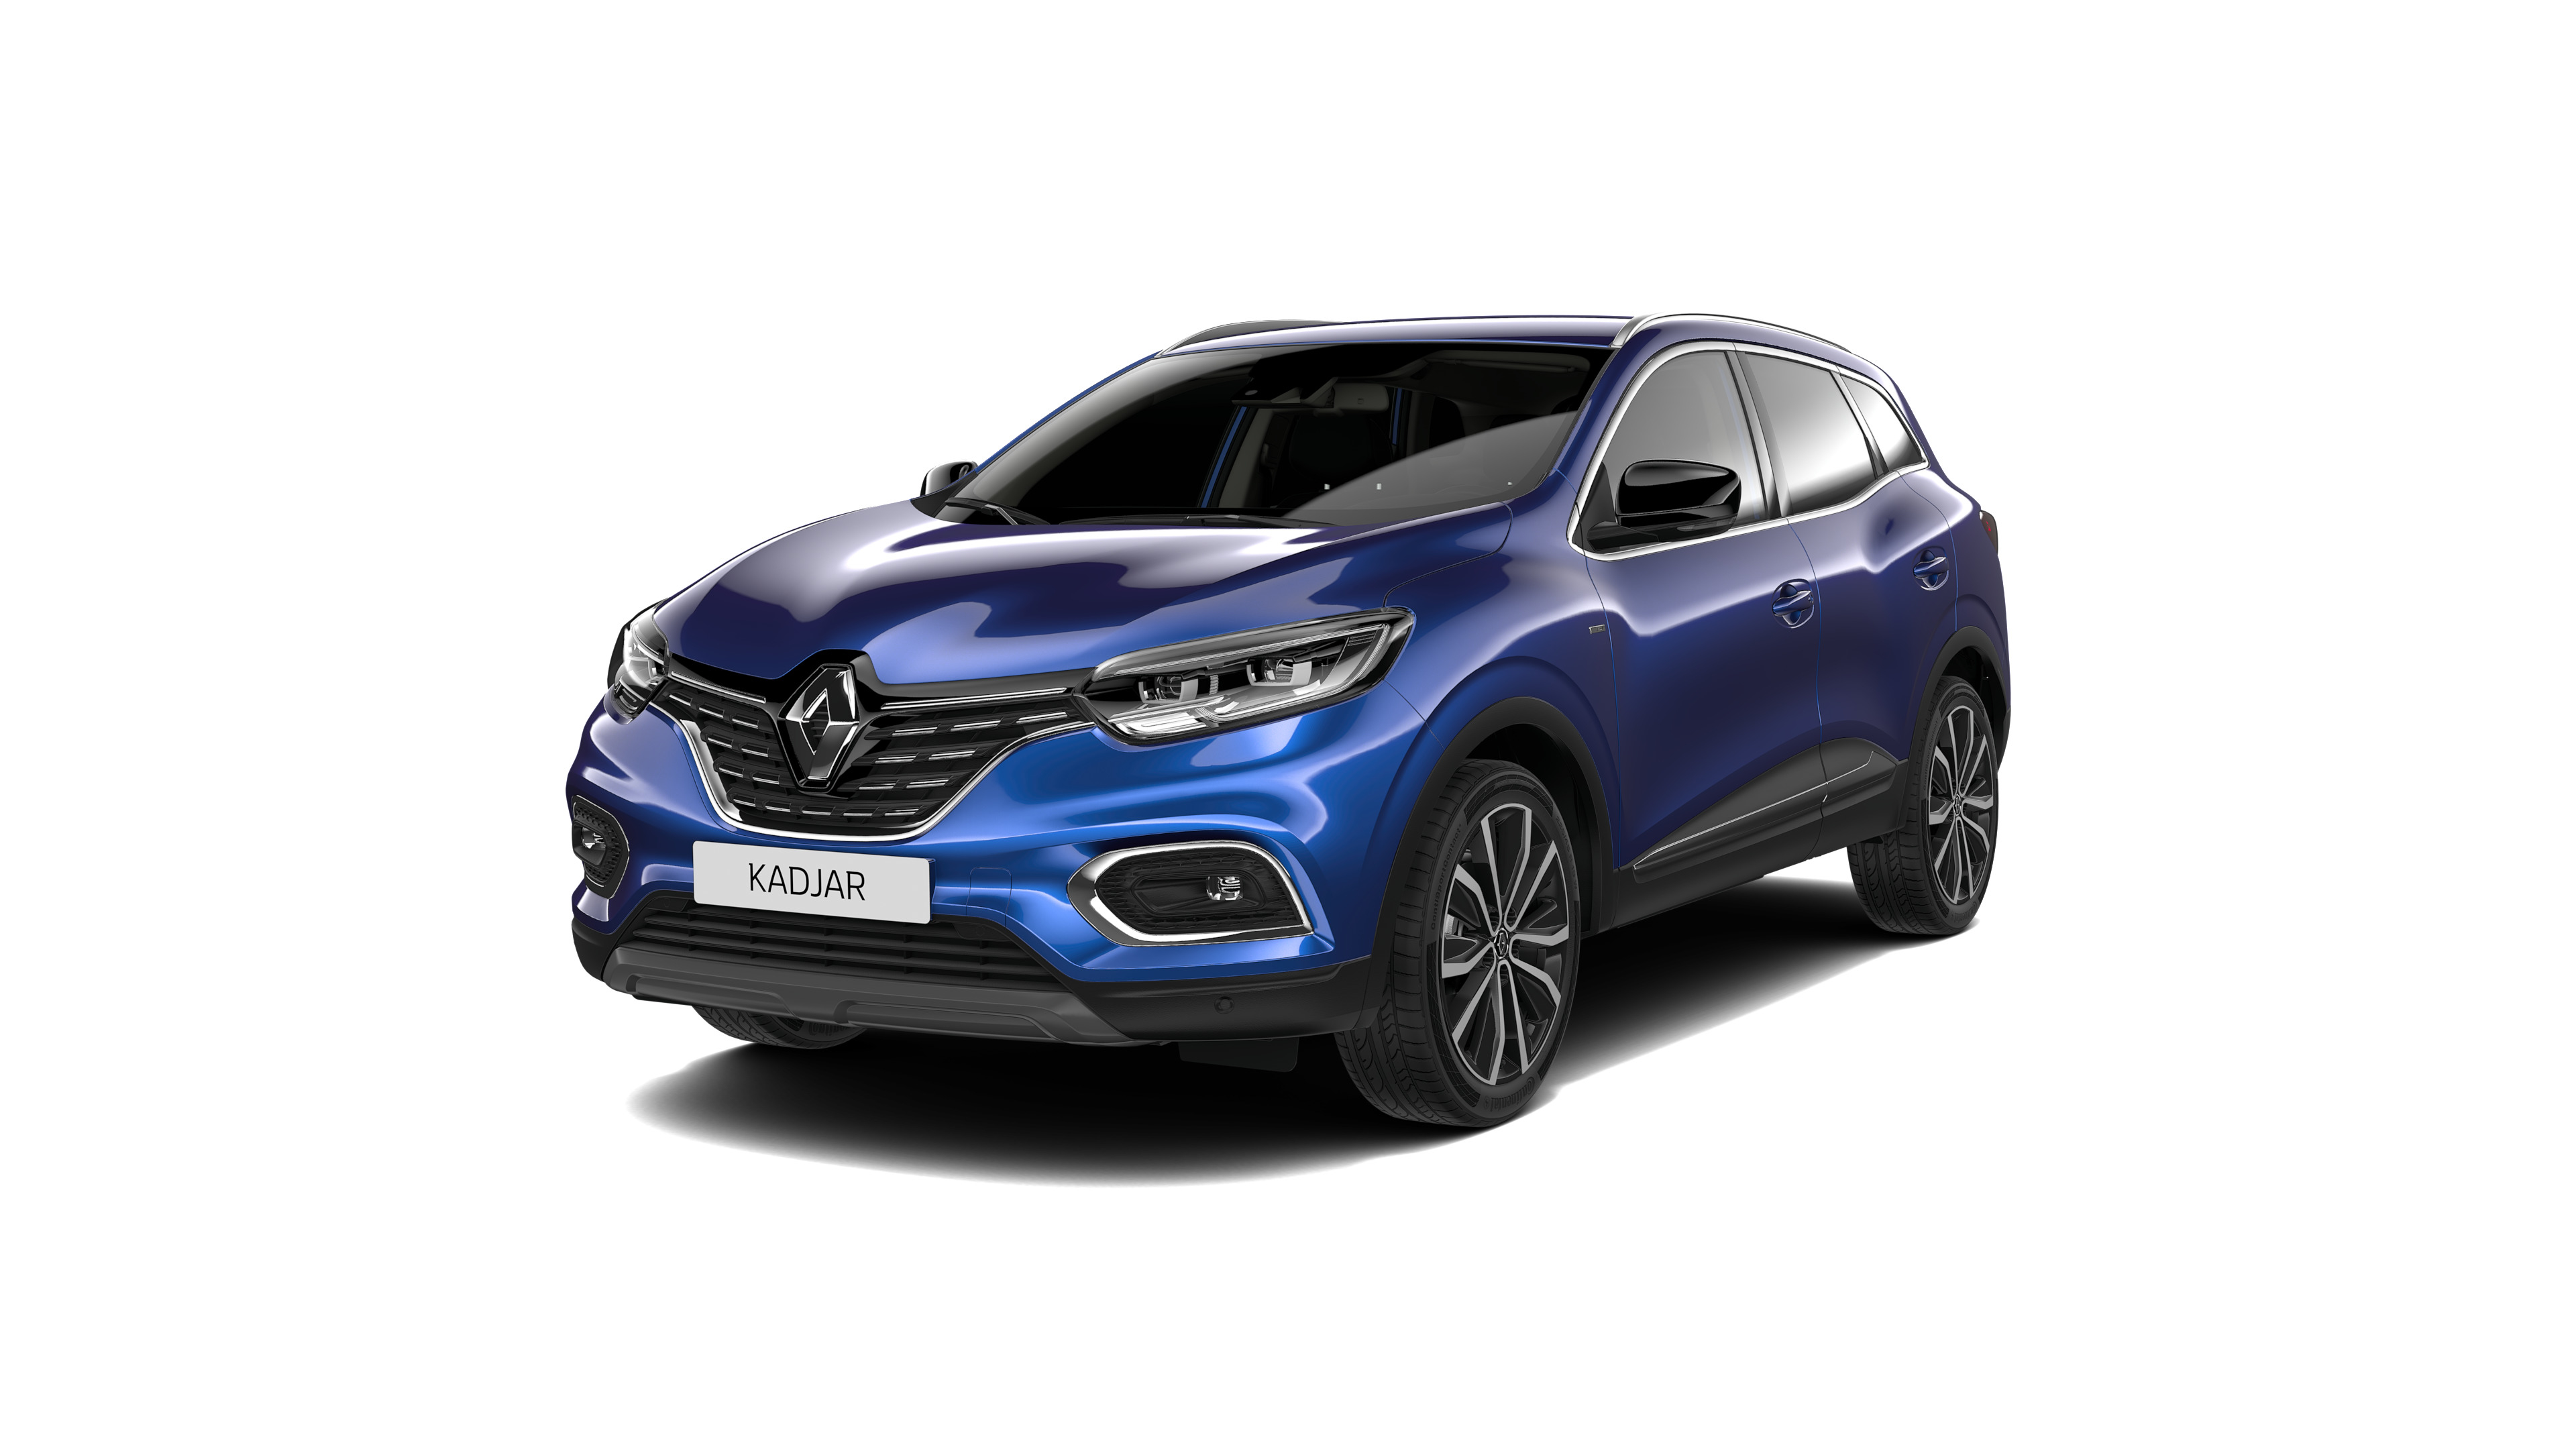 Renault Captur interior 2019